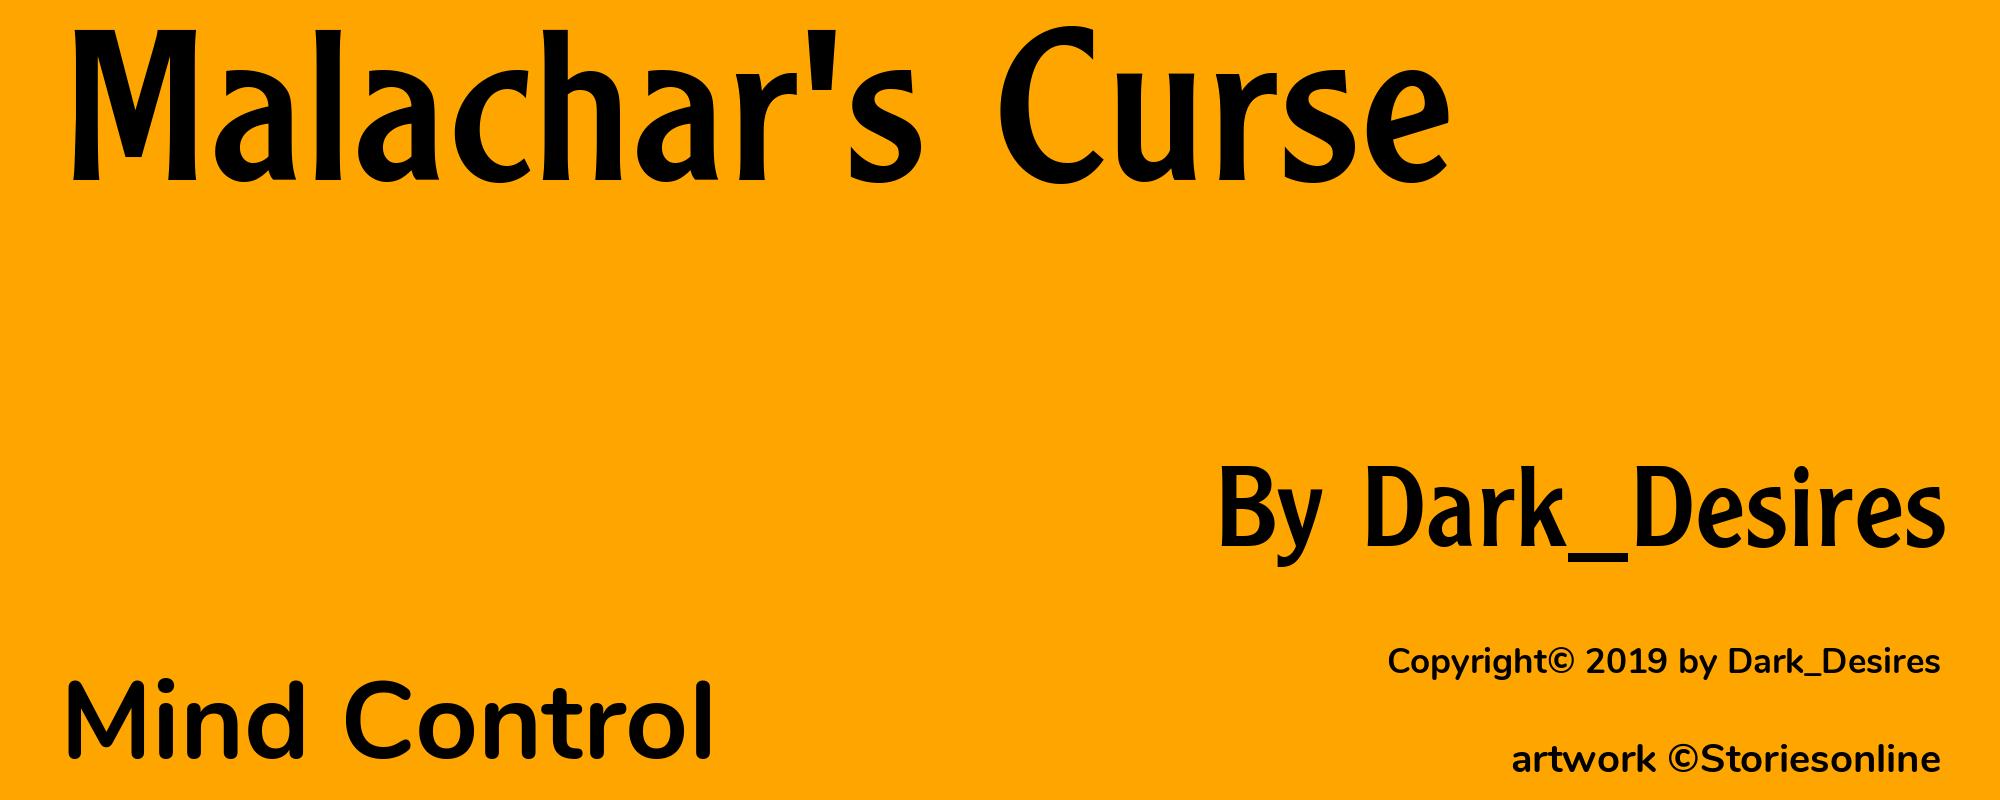 Malachar's Curse - Cover